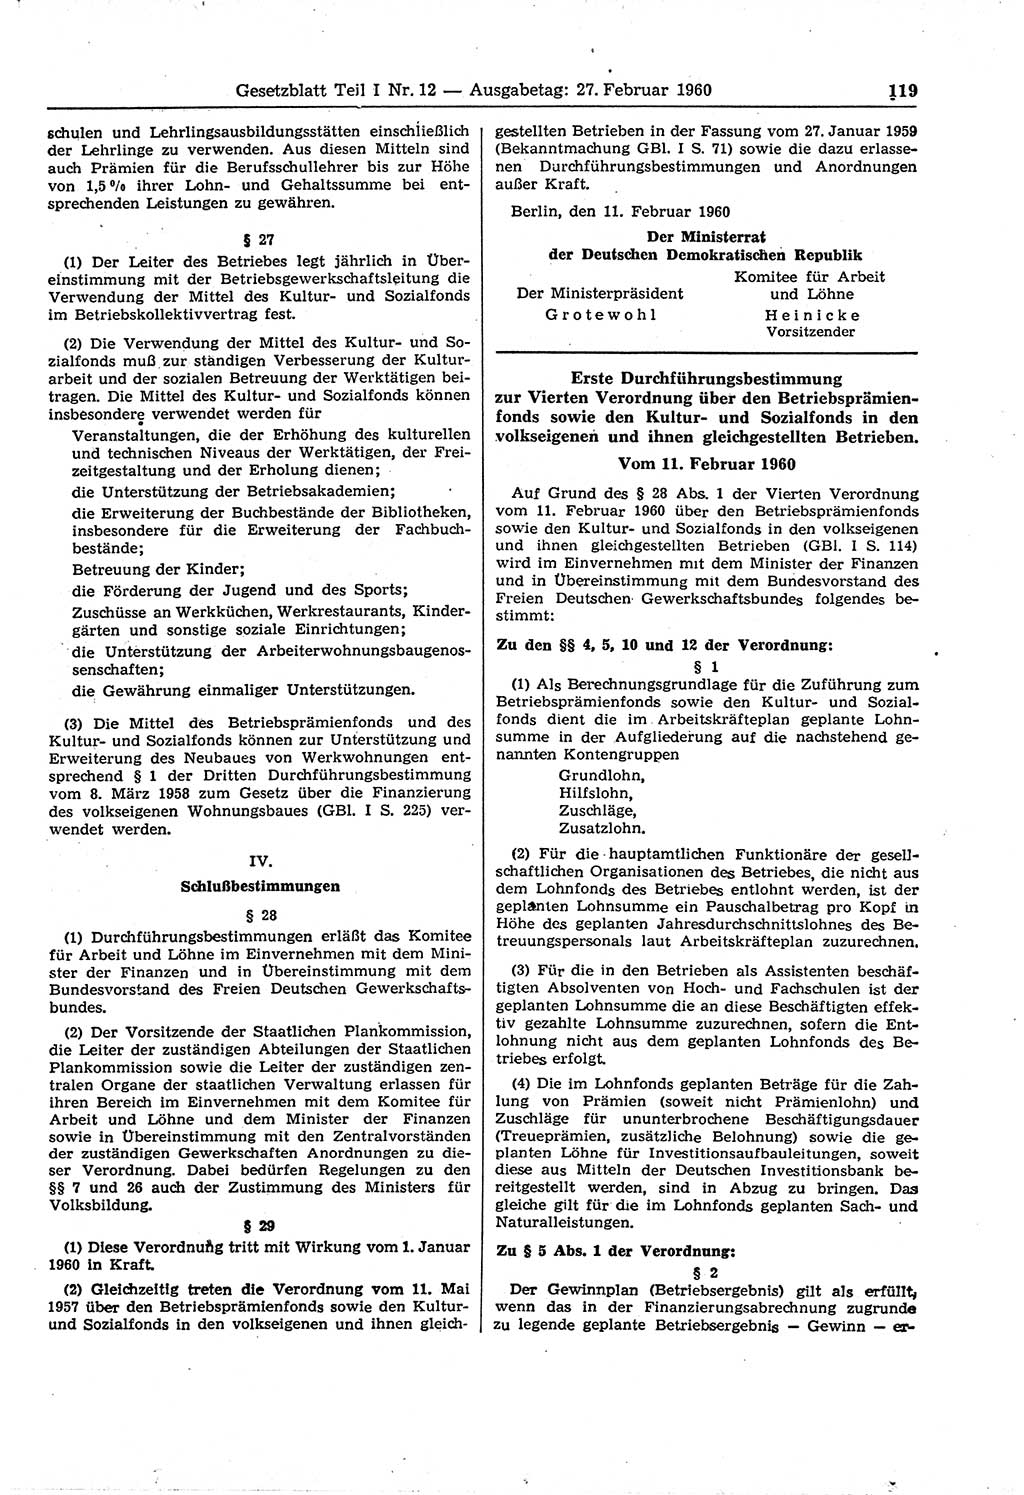 Gesetzblatt (GBl.) der Deutschen Demokratischen Republik (DDR) Teil Ⅰ 1960, Seite 119 (GBl. DDR Ⅰ 1960, S. 119)